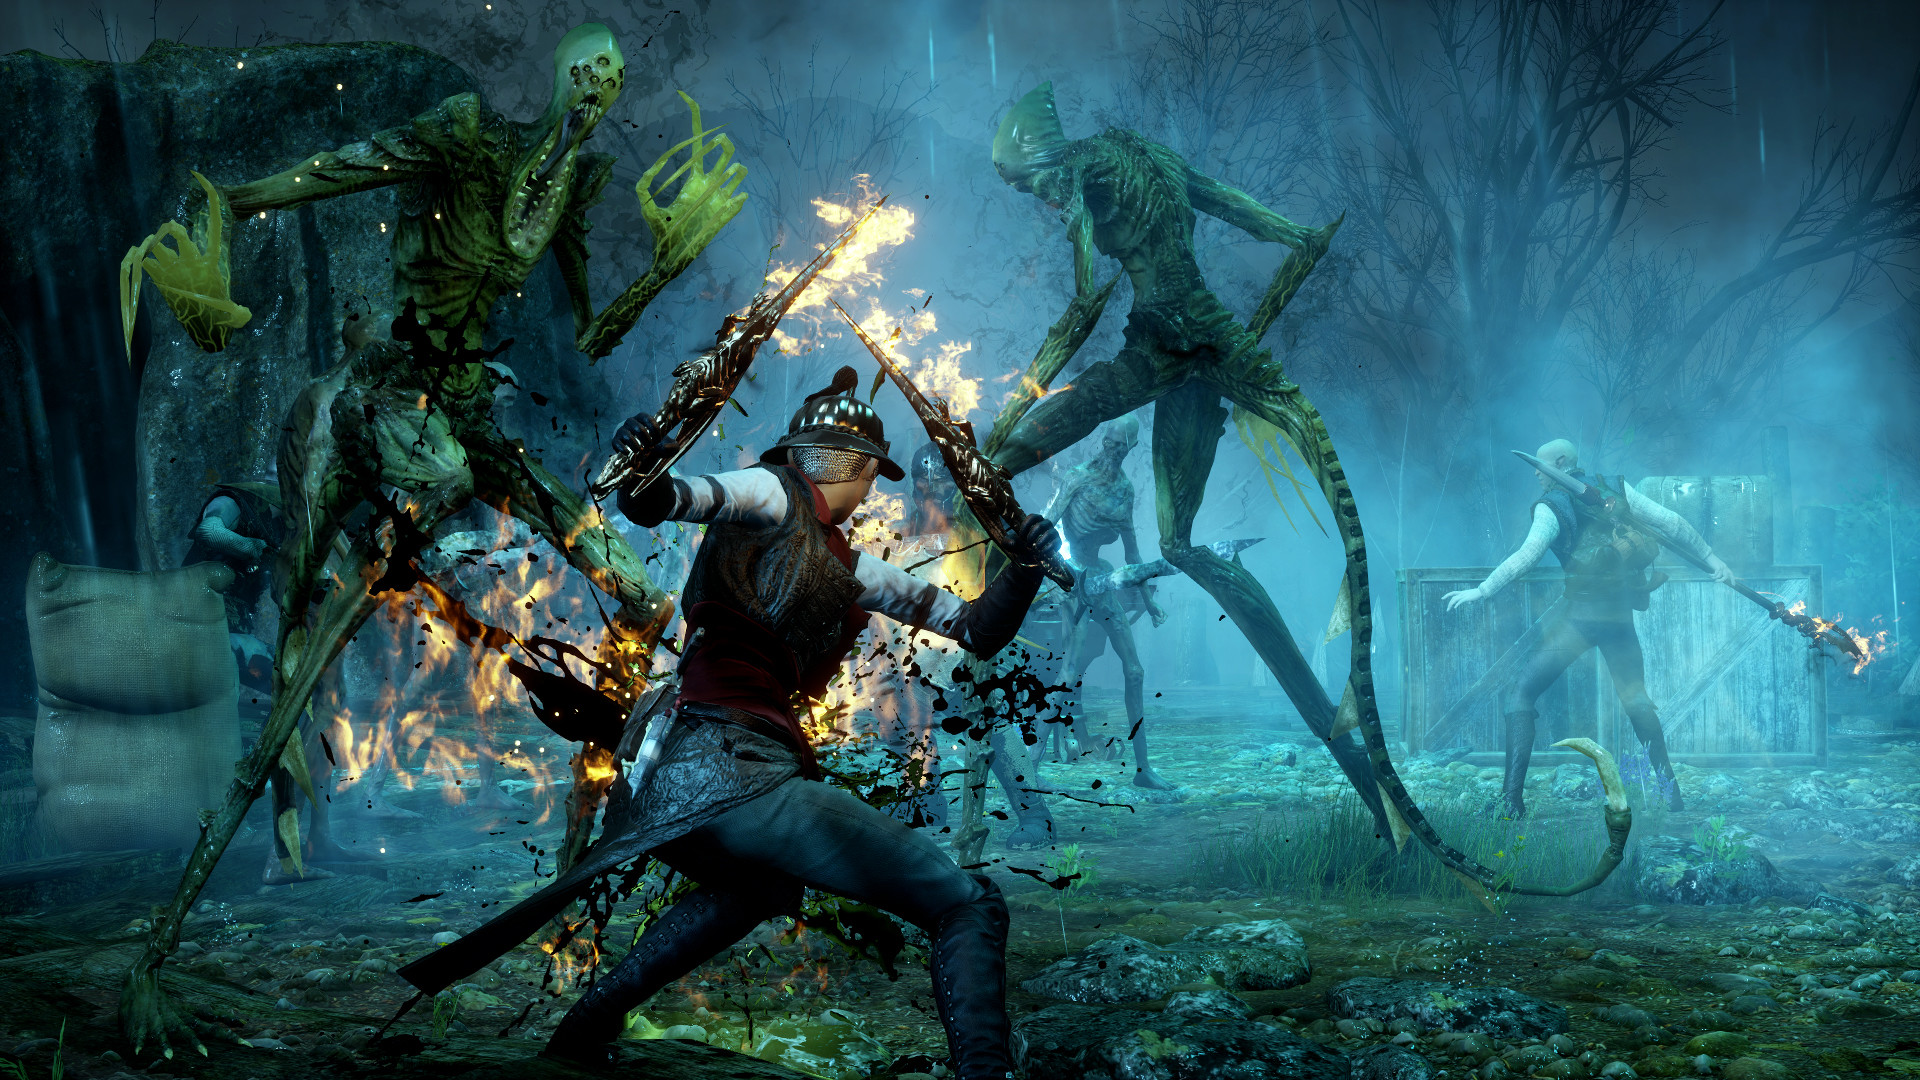 Ein gepanzerter Charakter mit einem flammenden Schwert kämpft in einem dunklen Wald gegen zwei große Dämonen